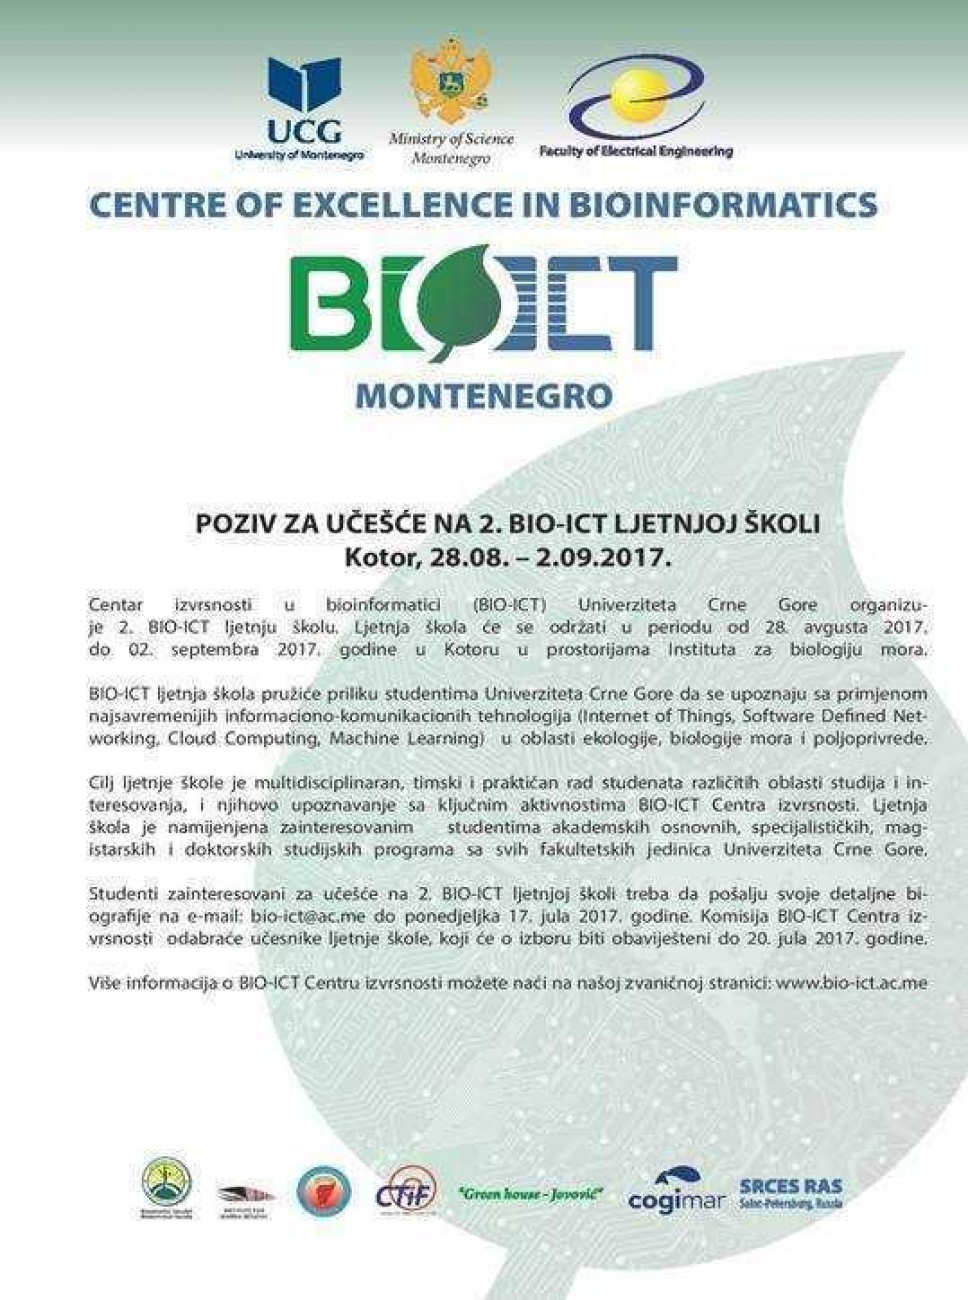 Poziv za 2. BIO-ICT ljetnju školu u Kotoru